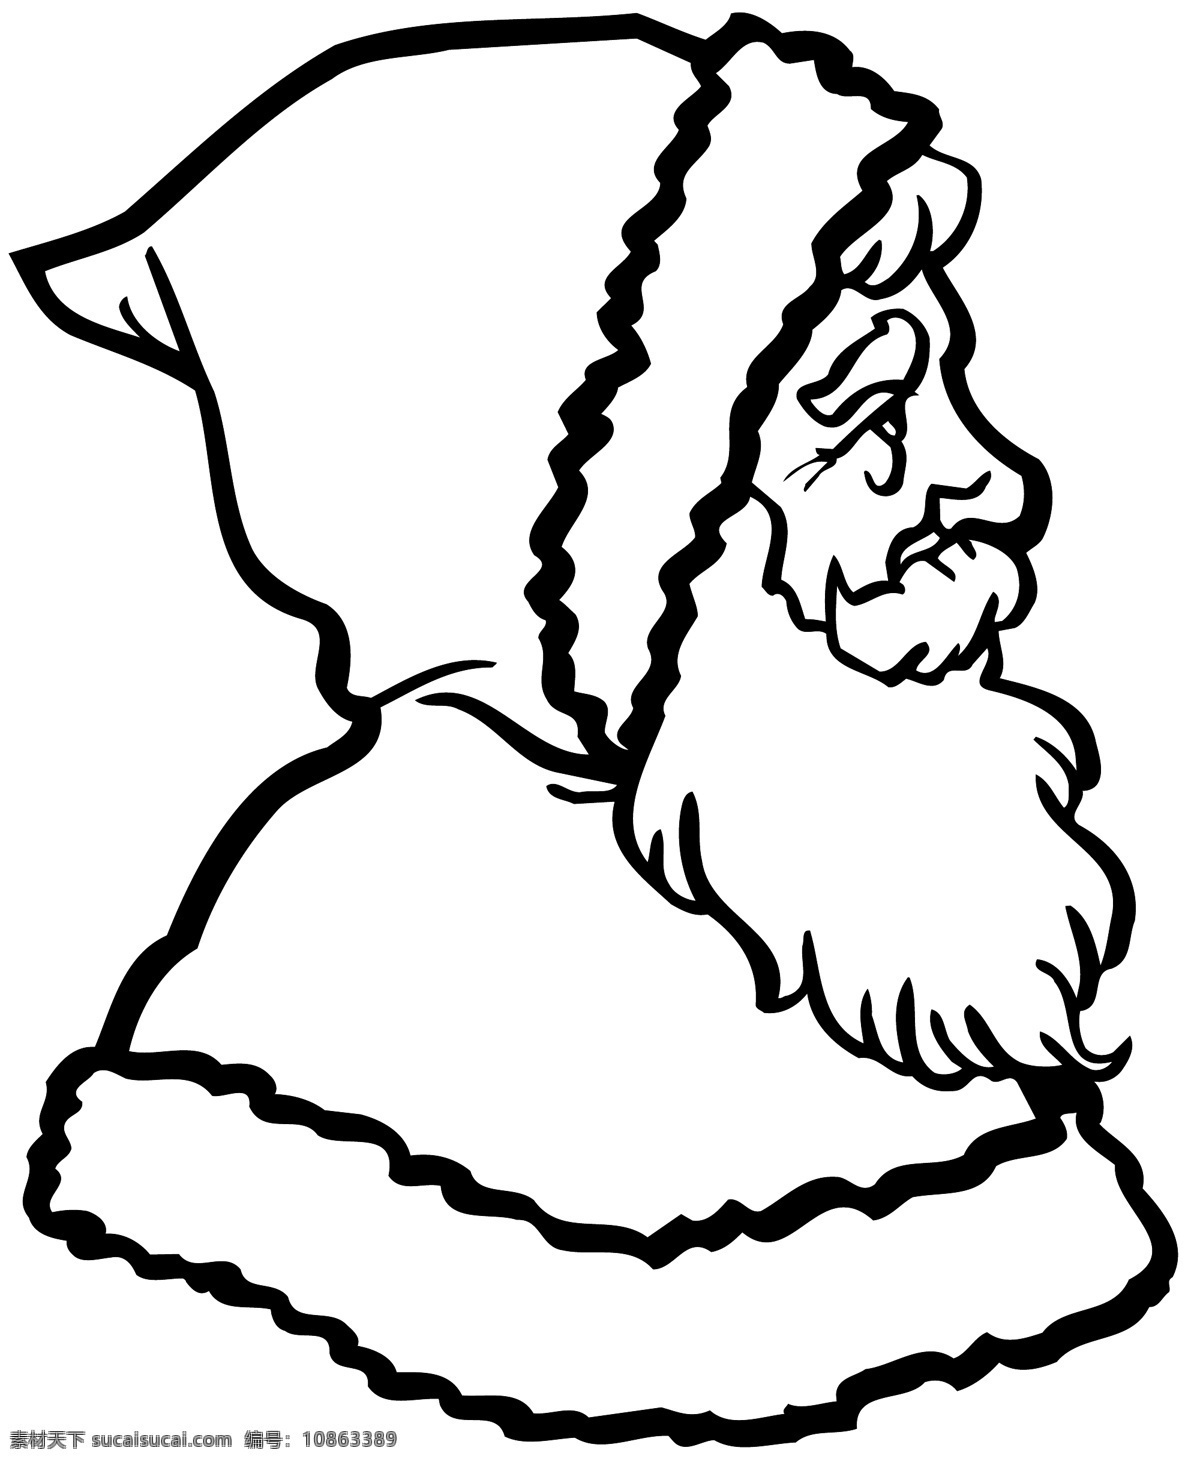 圣诞老人头像 卡通头像 矢量素材 格式 eps格式 设计素材 人物头像 卡通人物 矢量图库 白色